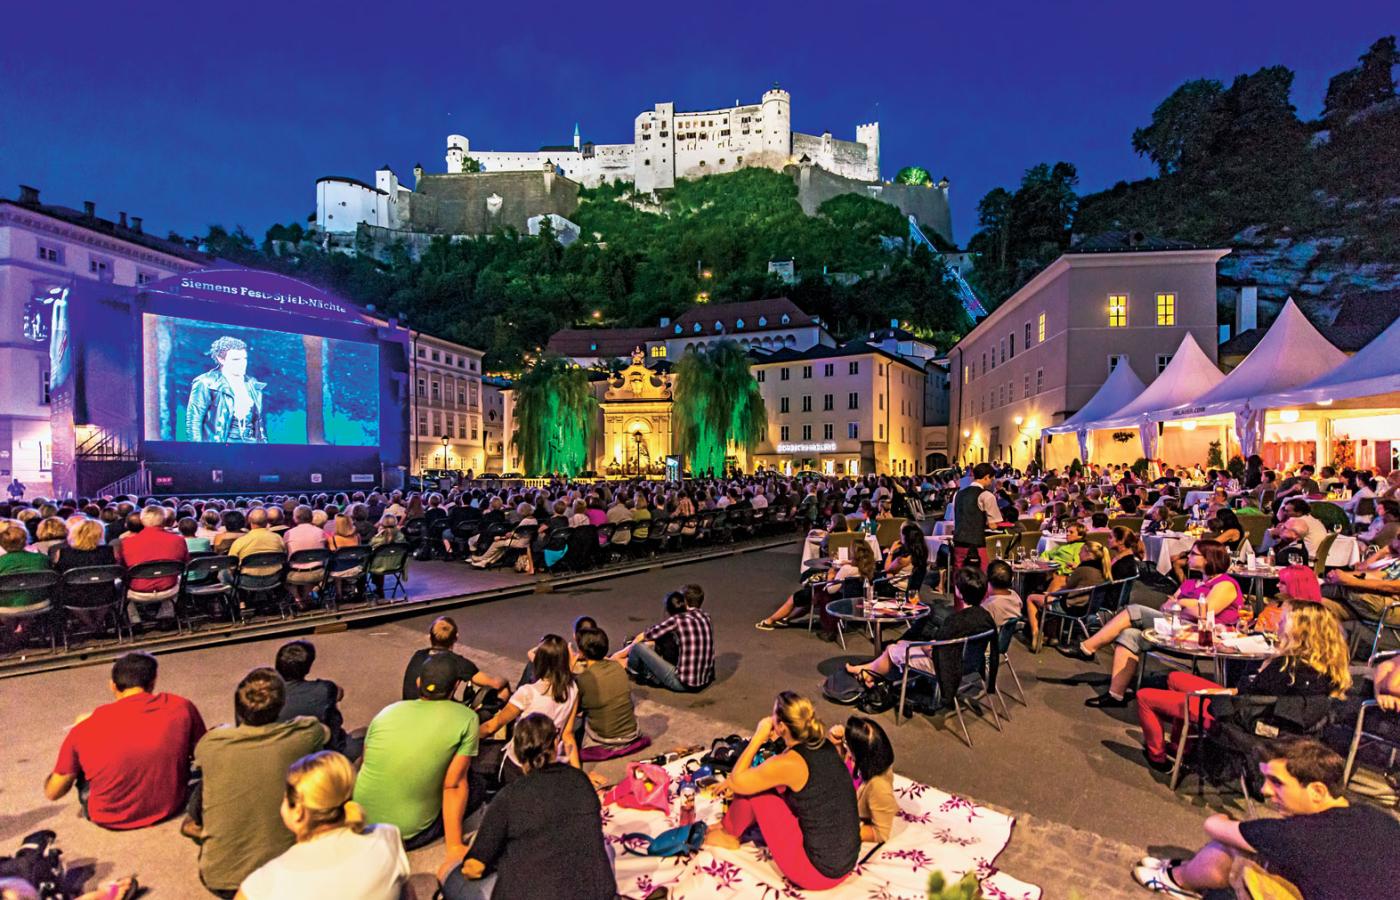 Festiwal w Salzburgu to jedno z najważniejszych wydarzeń operowych na świecie.